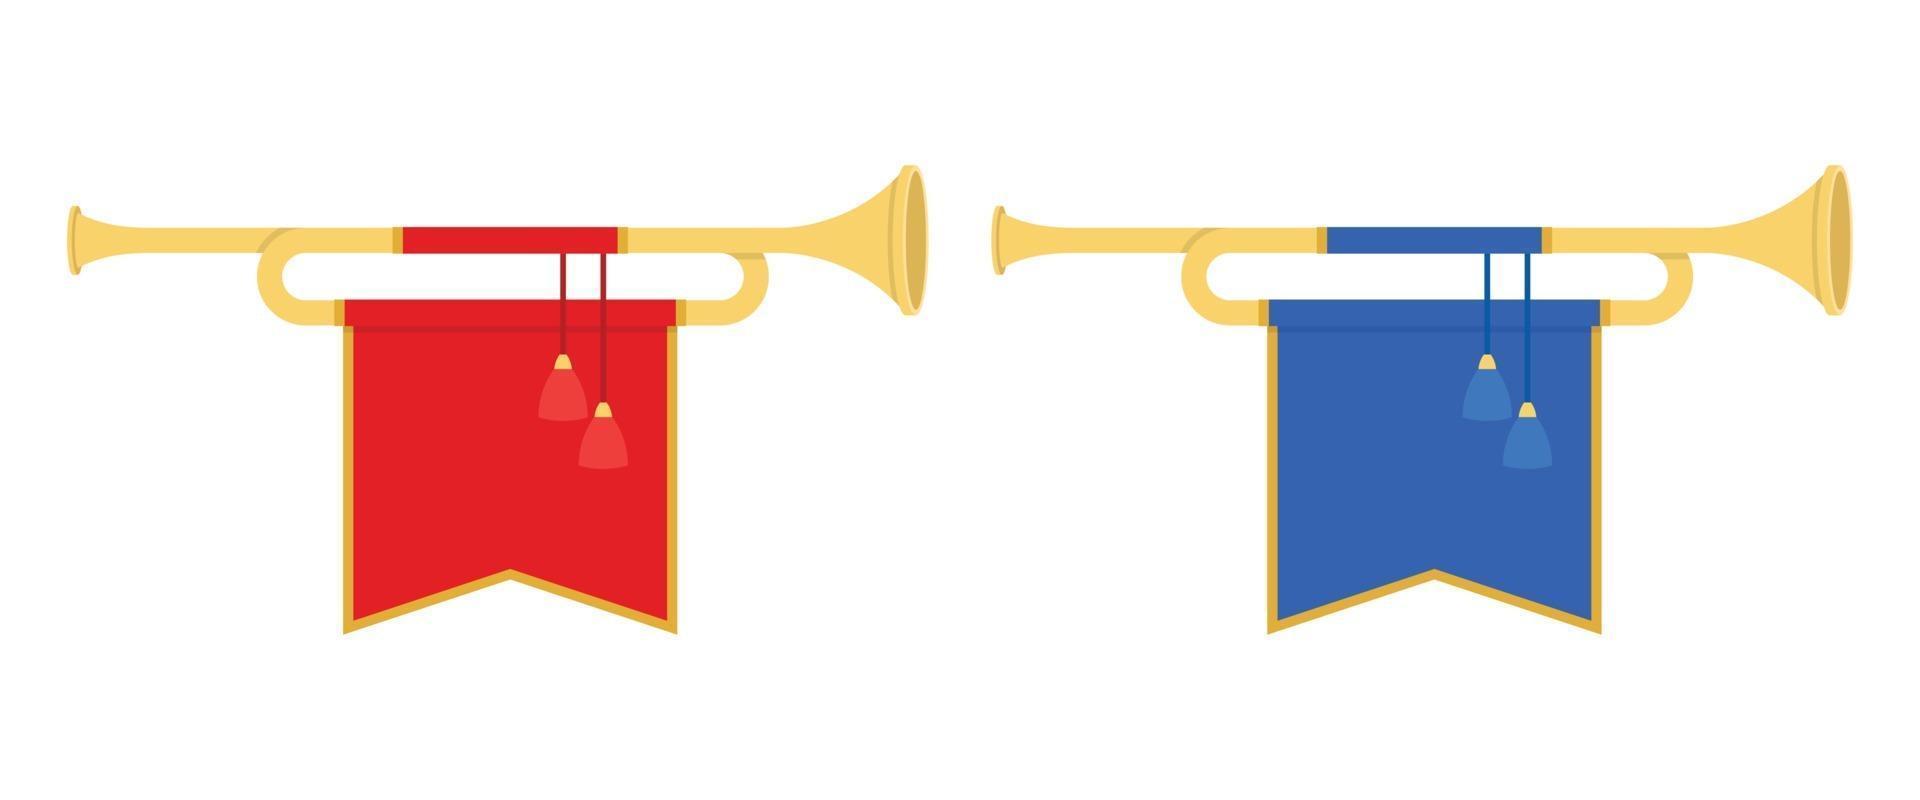 trompettes de corne d'or vector illustration dans un style plat